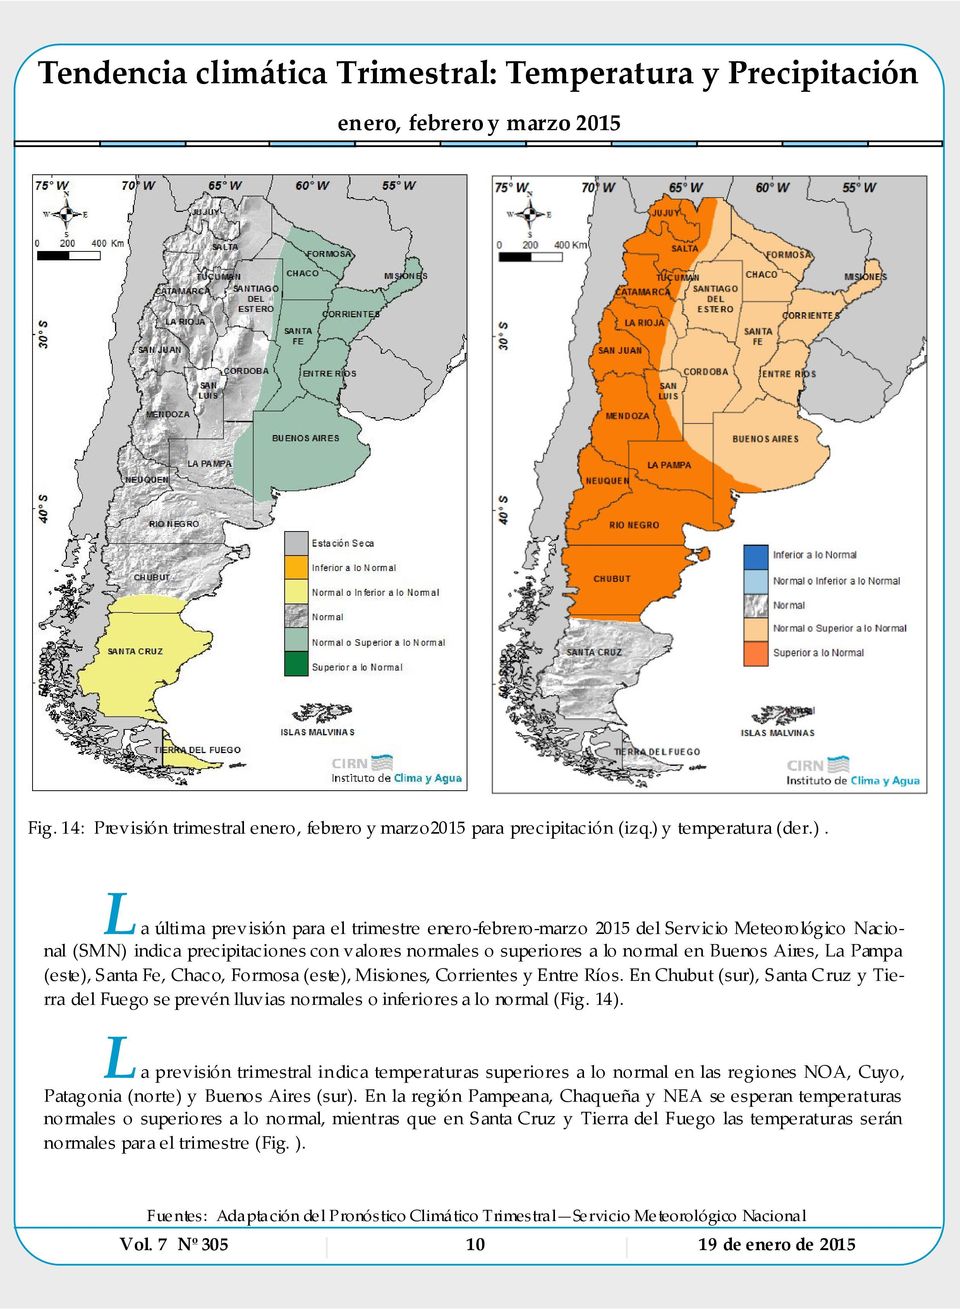 L a última previsión para el trimestre enero-febrero-marzo 2015 del Servic io Meteorológico Nac ional (SMN) indica precipitaciones con valores normales o superiores a lo normal en Buenos Aires, La